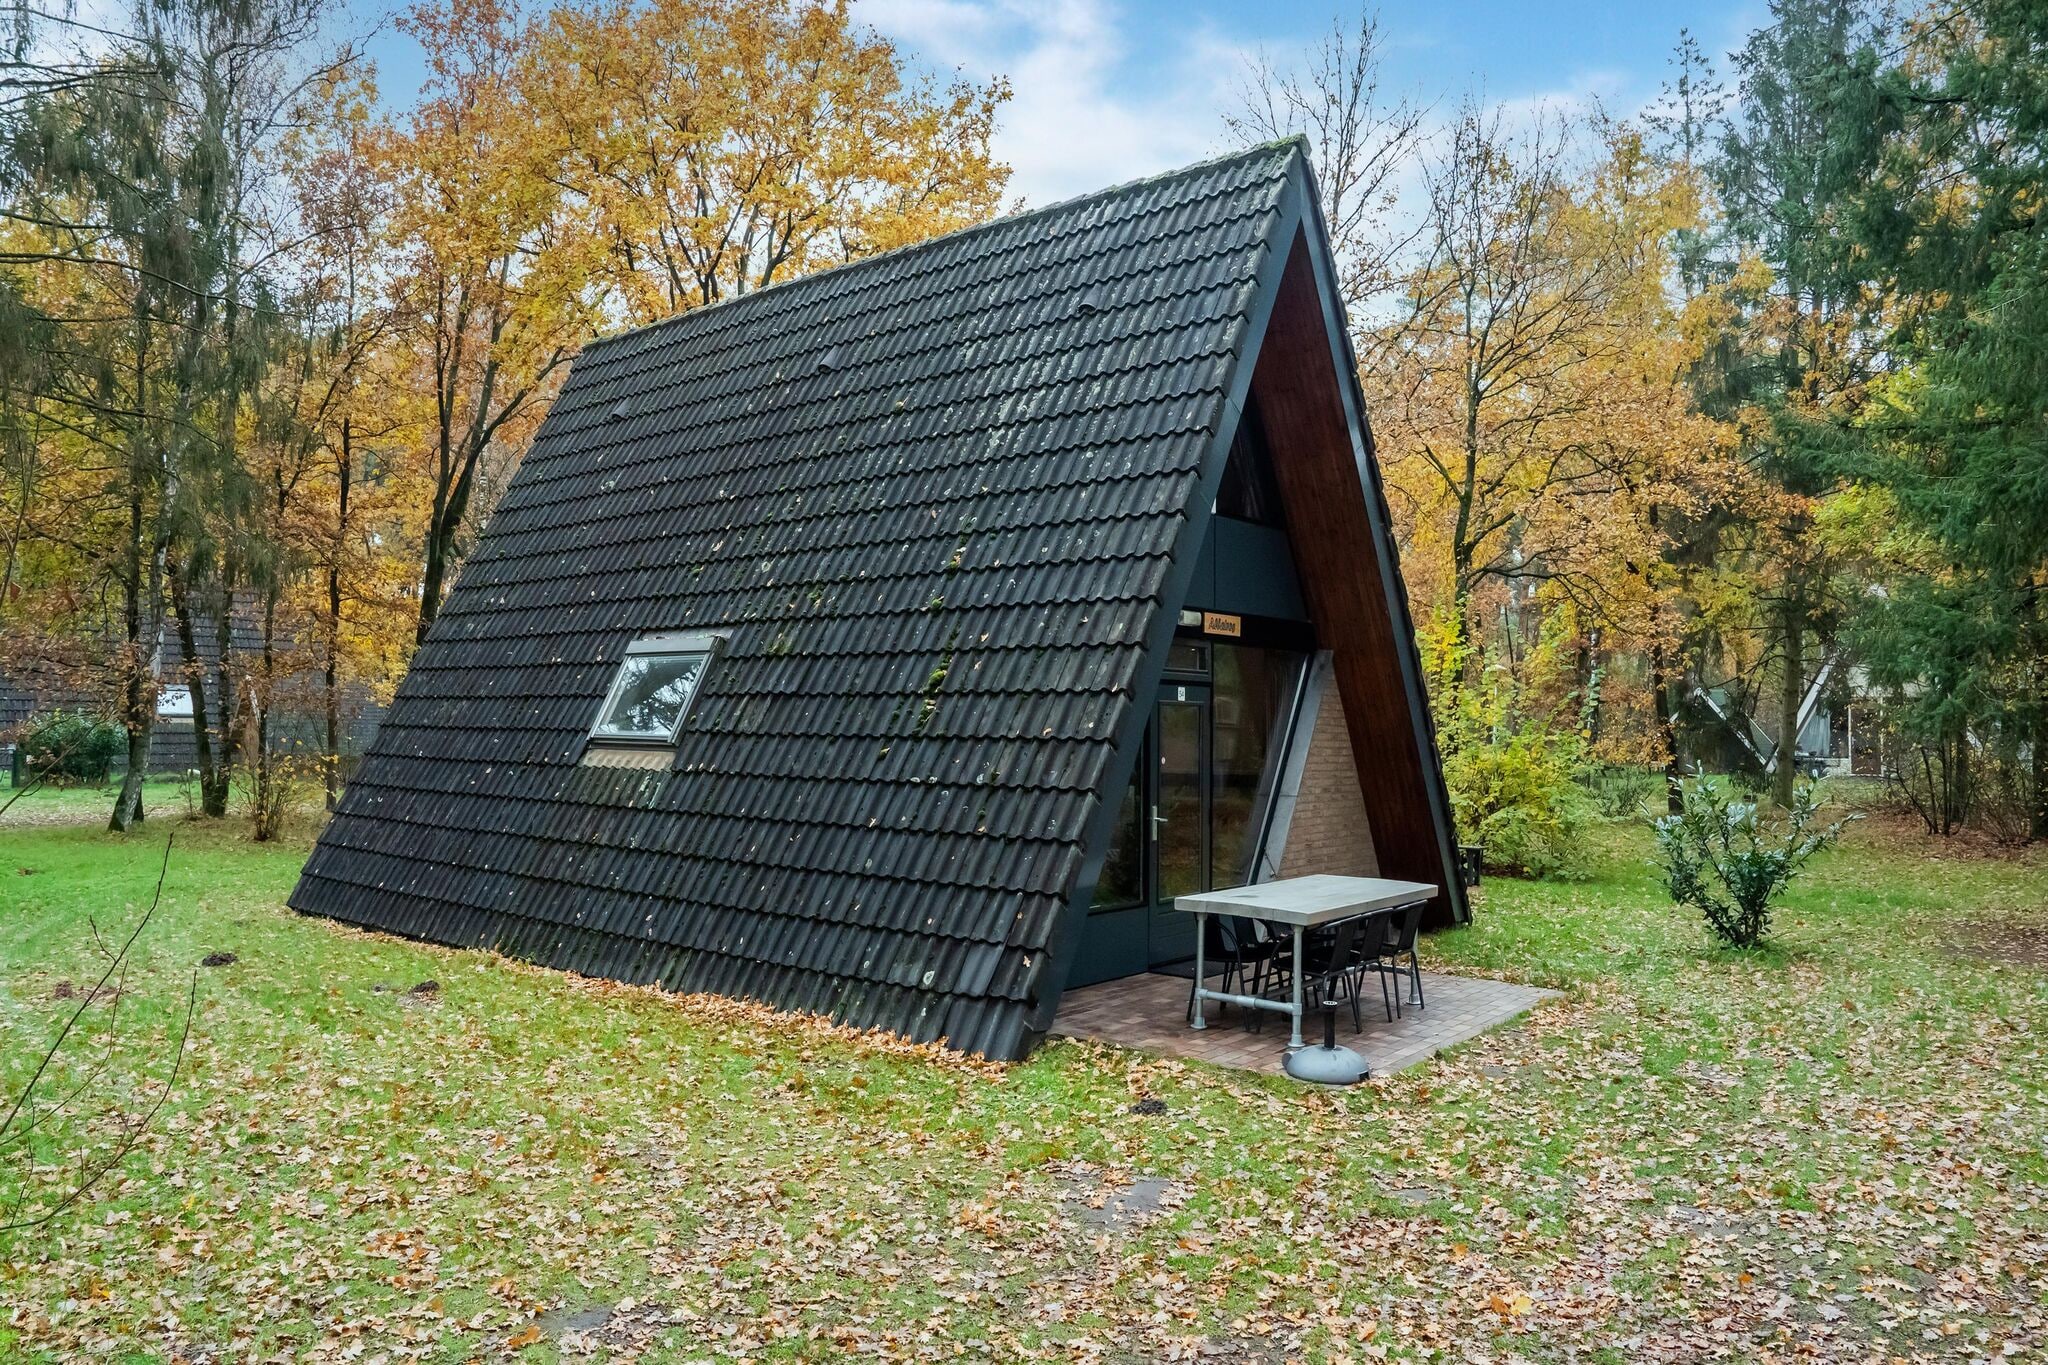 Maison de vacances moderne dans le nord du Limbourg près de la forêt